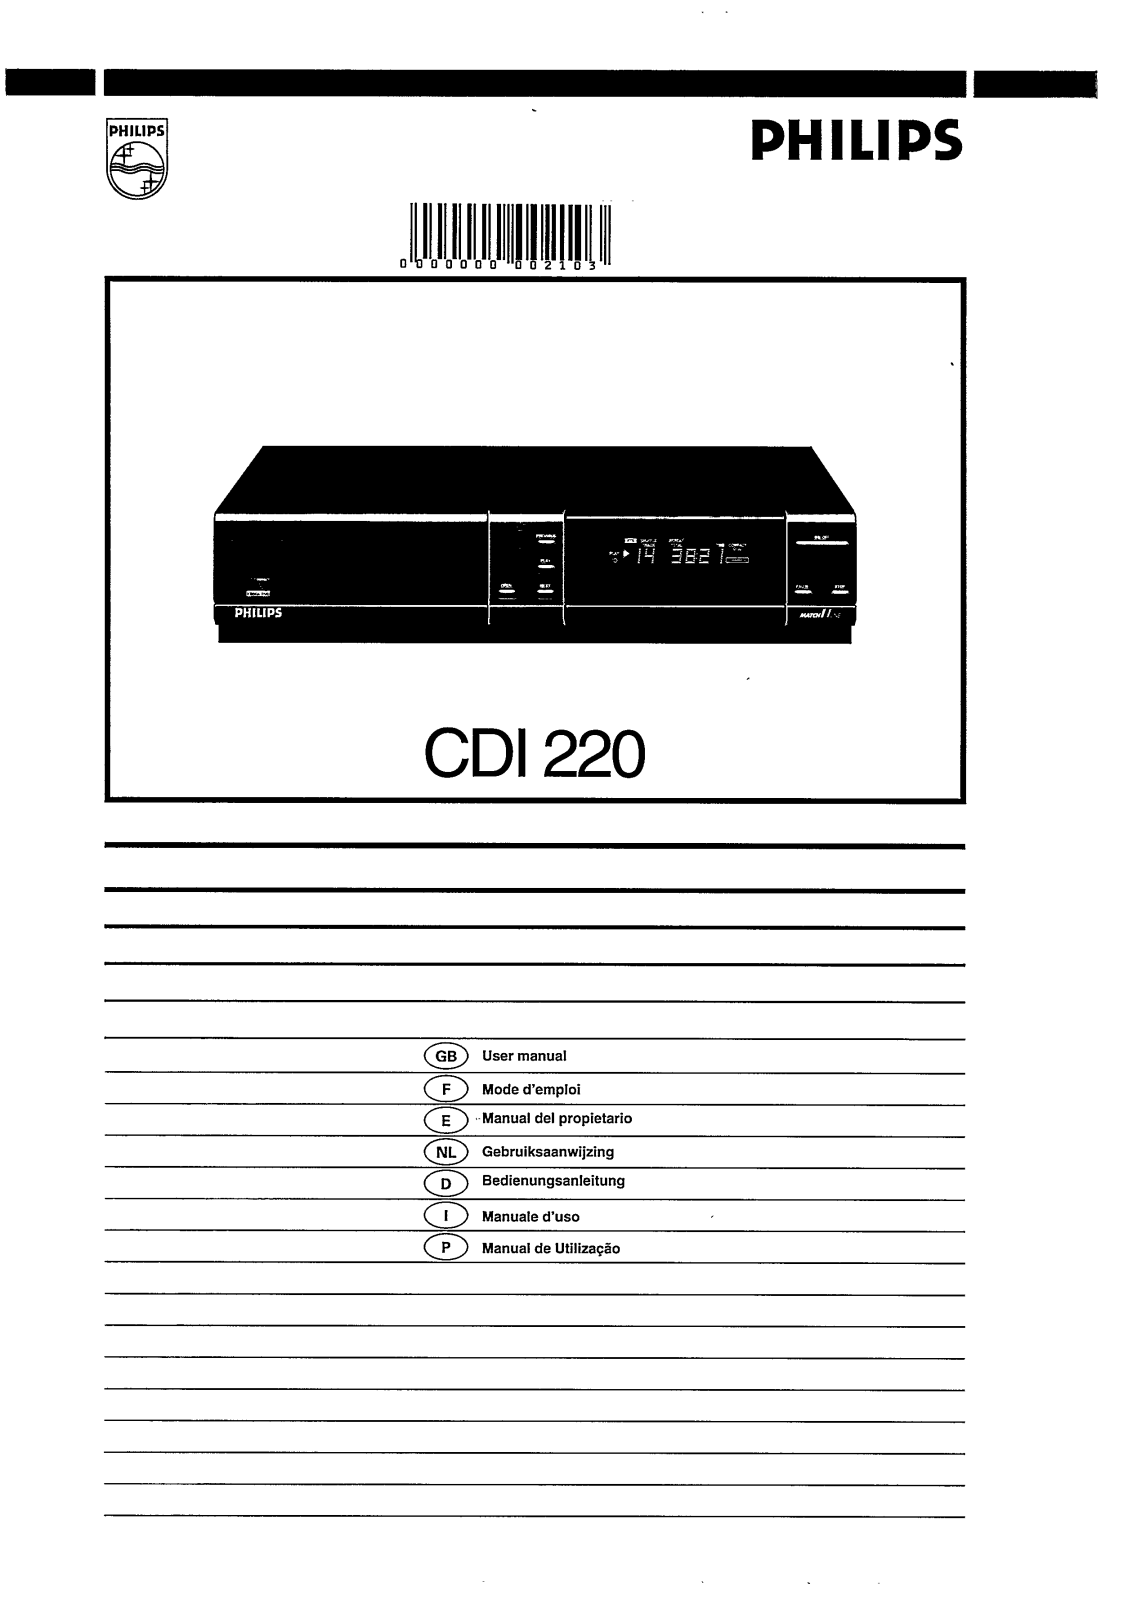 Philips CDI220/P0P, CDI220/P0C, CDI220/97, CDI220/85, CDI220/83 User Manual